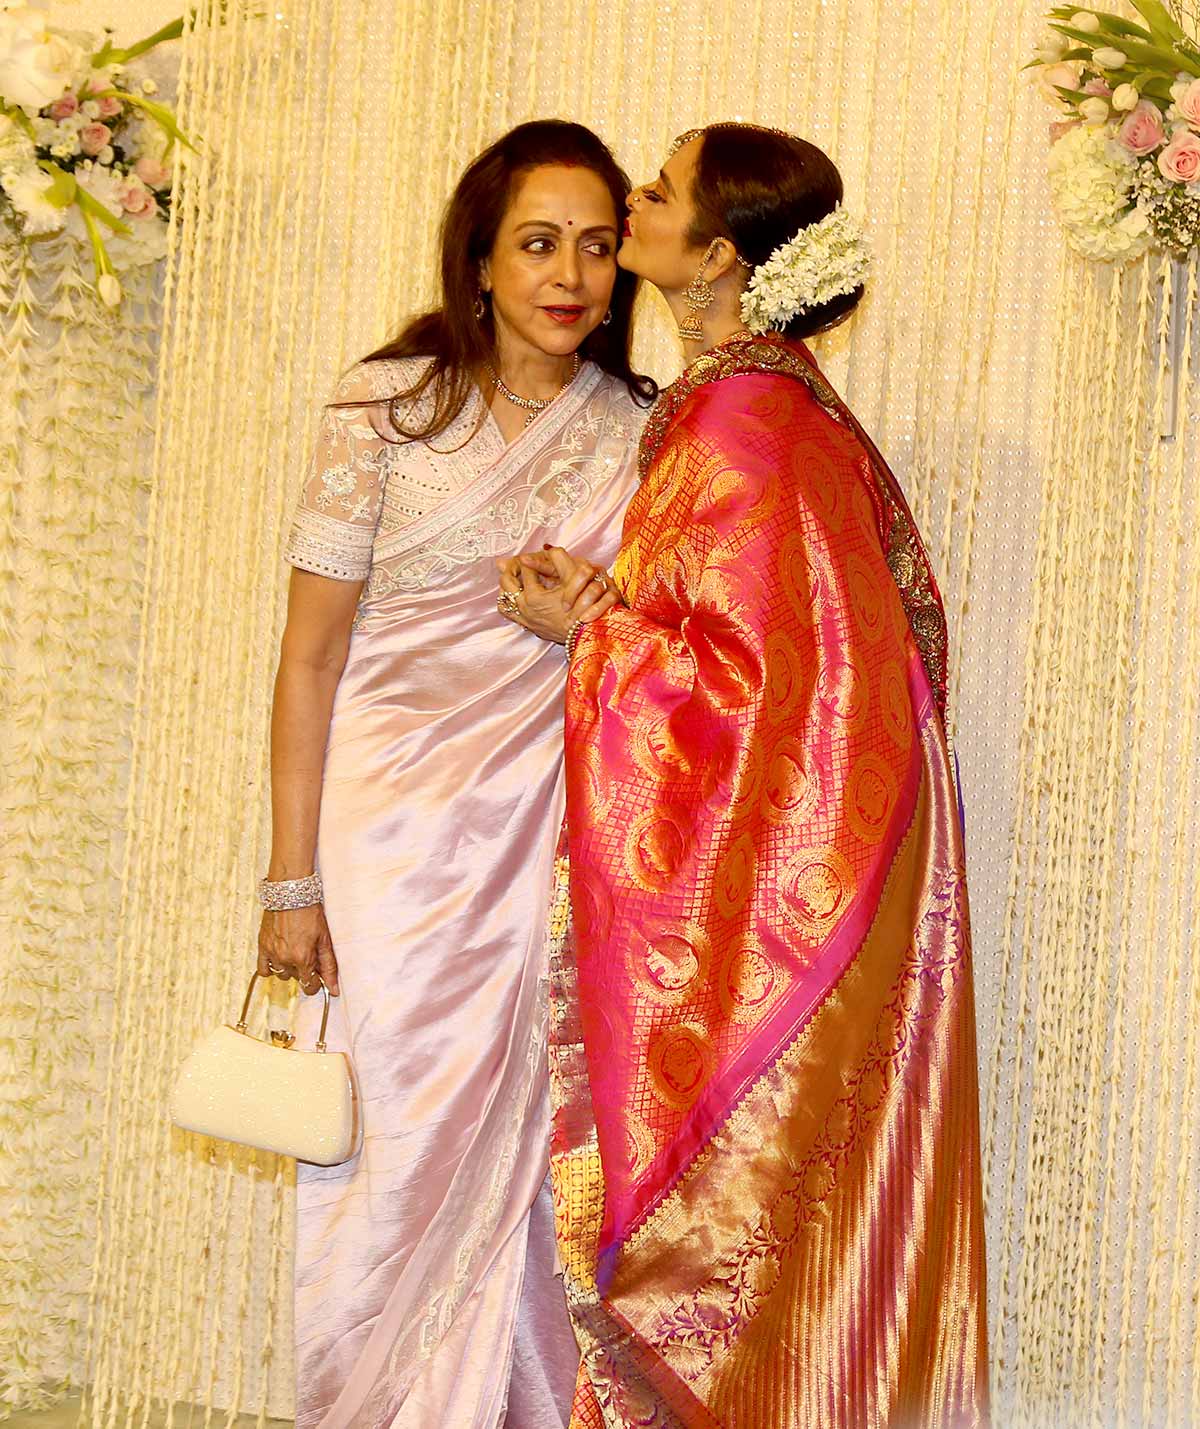 Why Is Rekha Kissing Hema Malini?